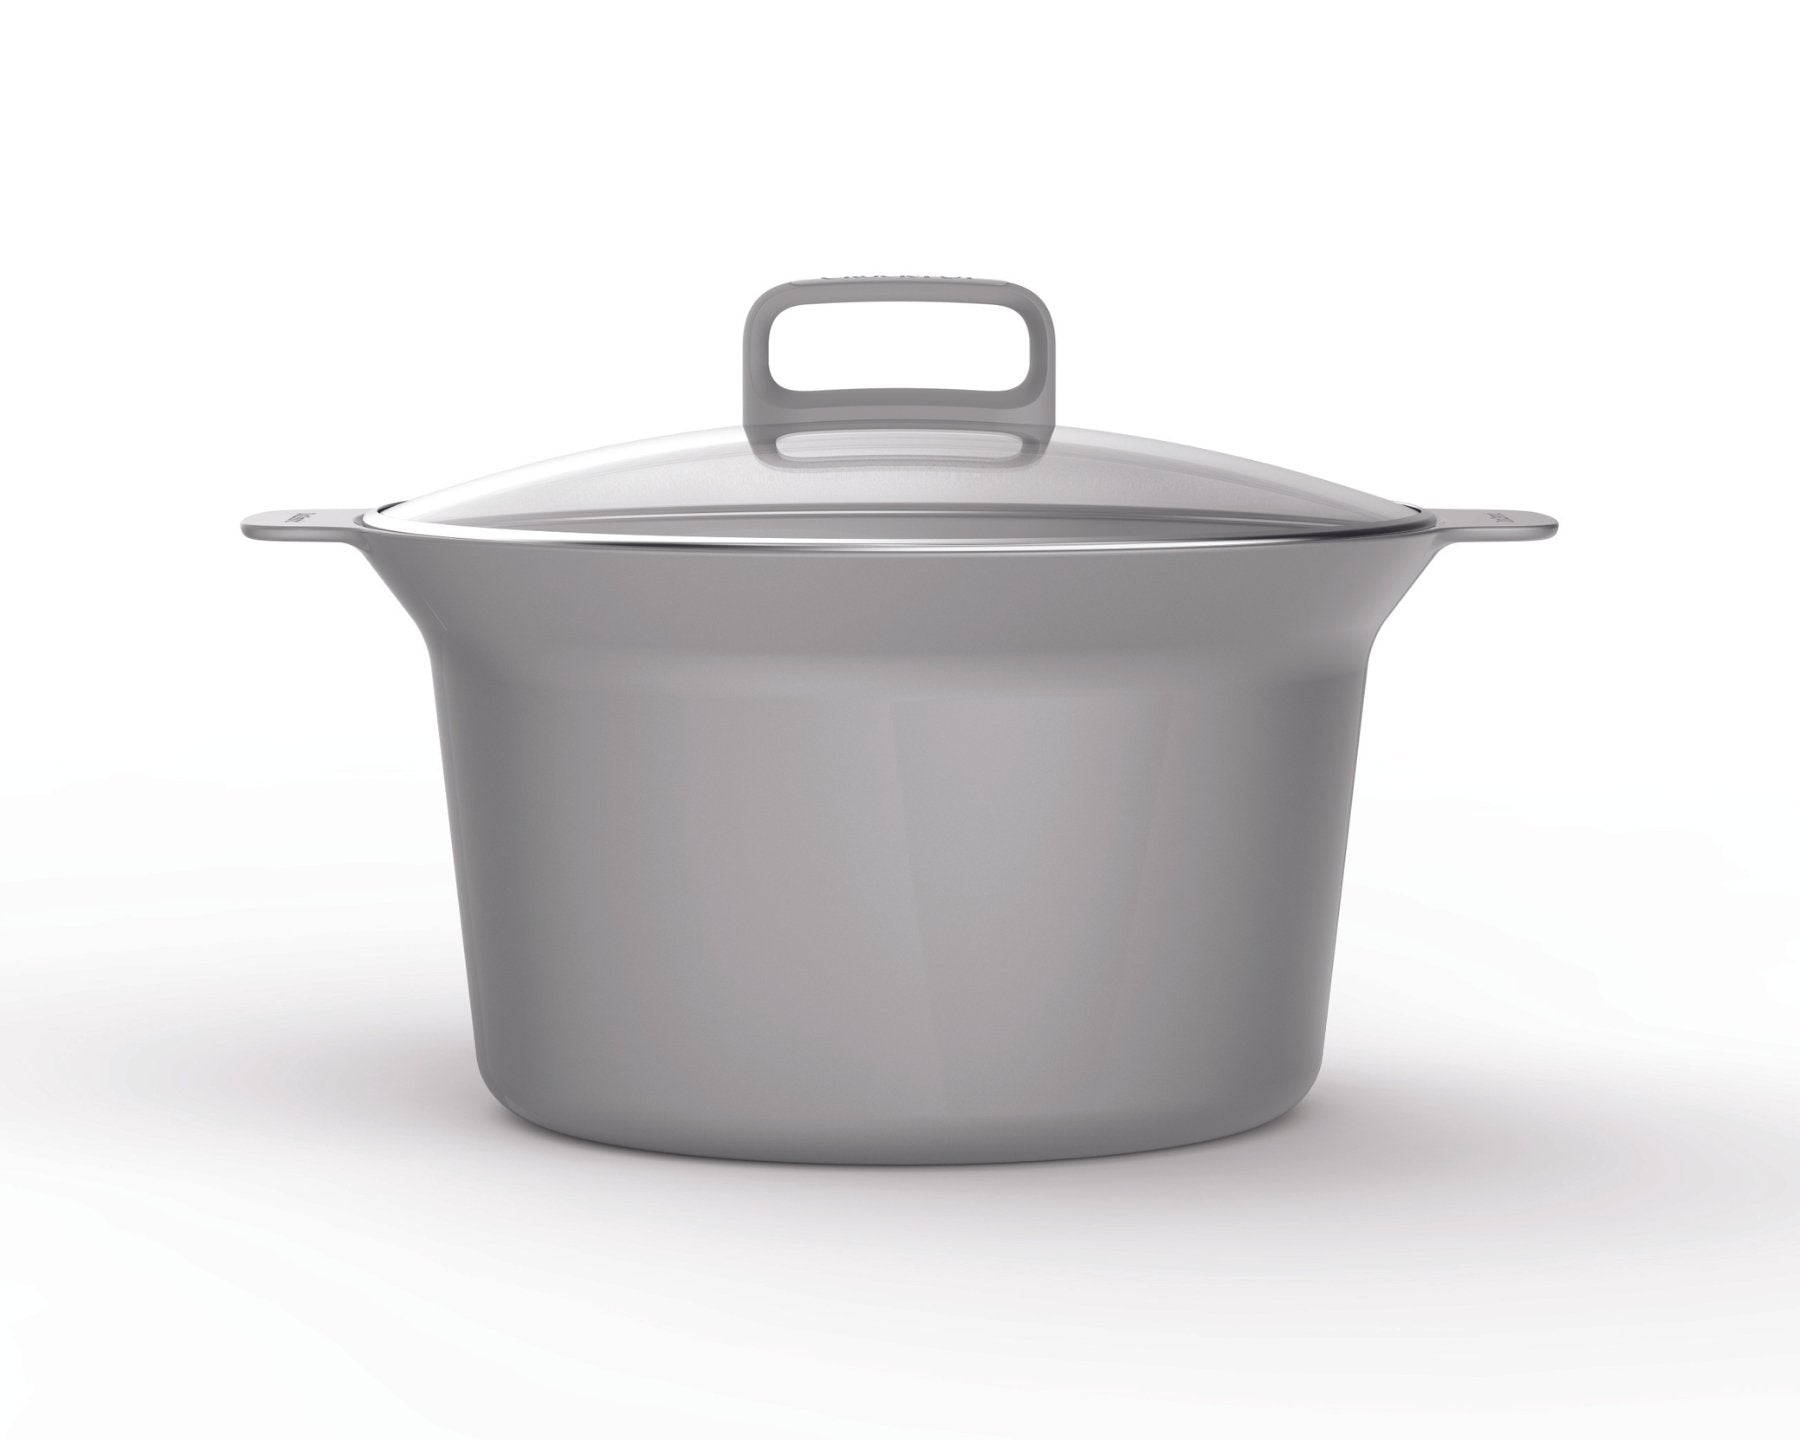 Crockpot Duraceramic, 5 L, Slow Cooker,  - kitchen-more.ch, kostenloser Versand in der ganzen Schweiz